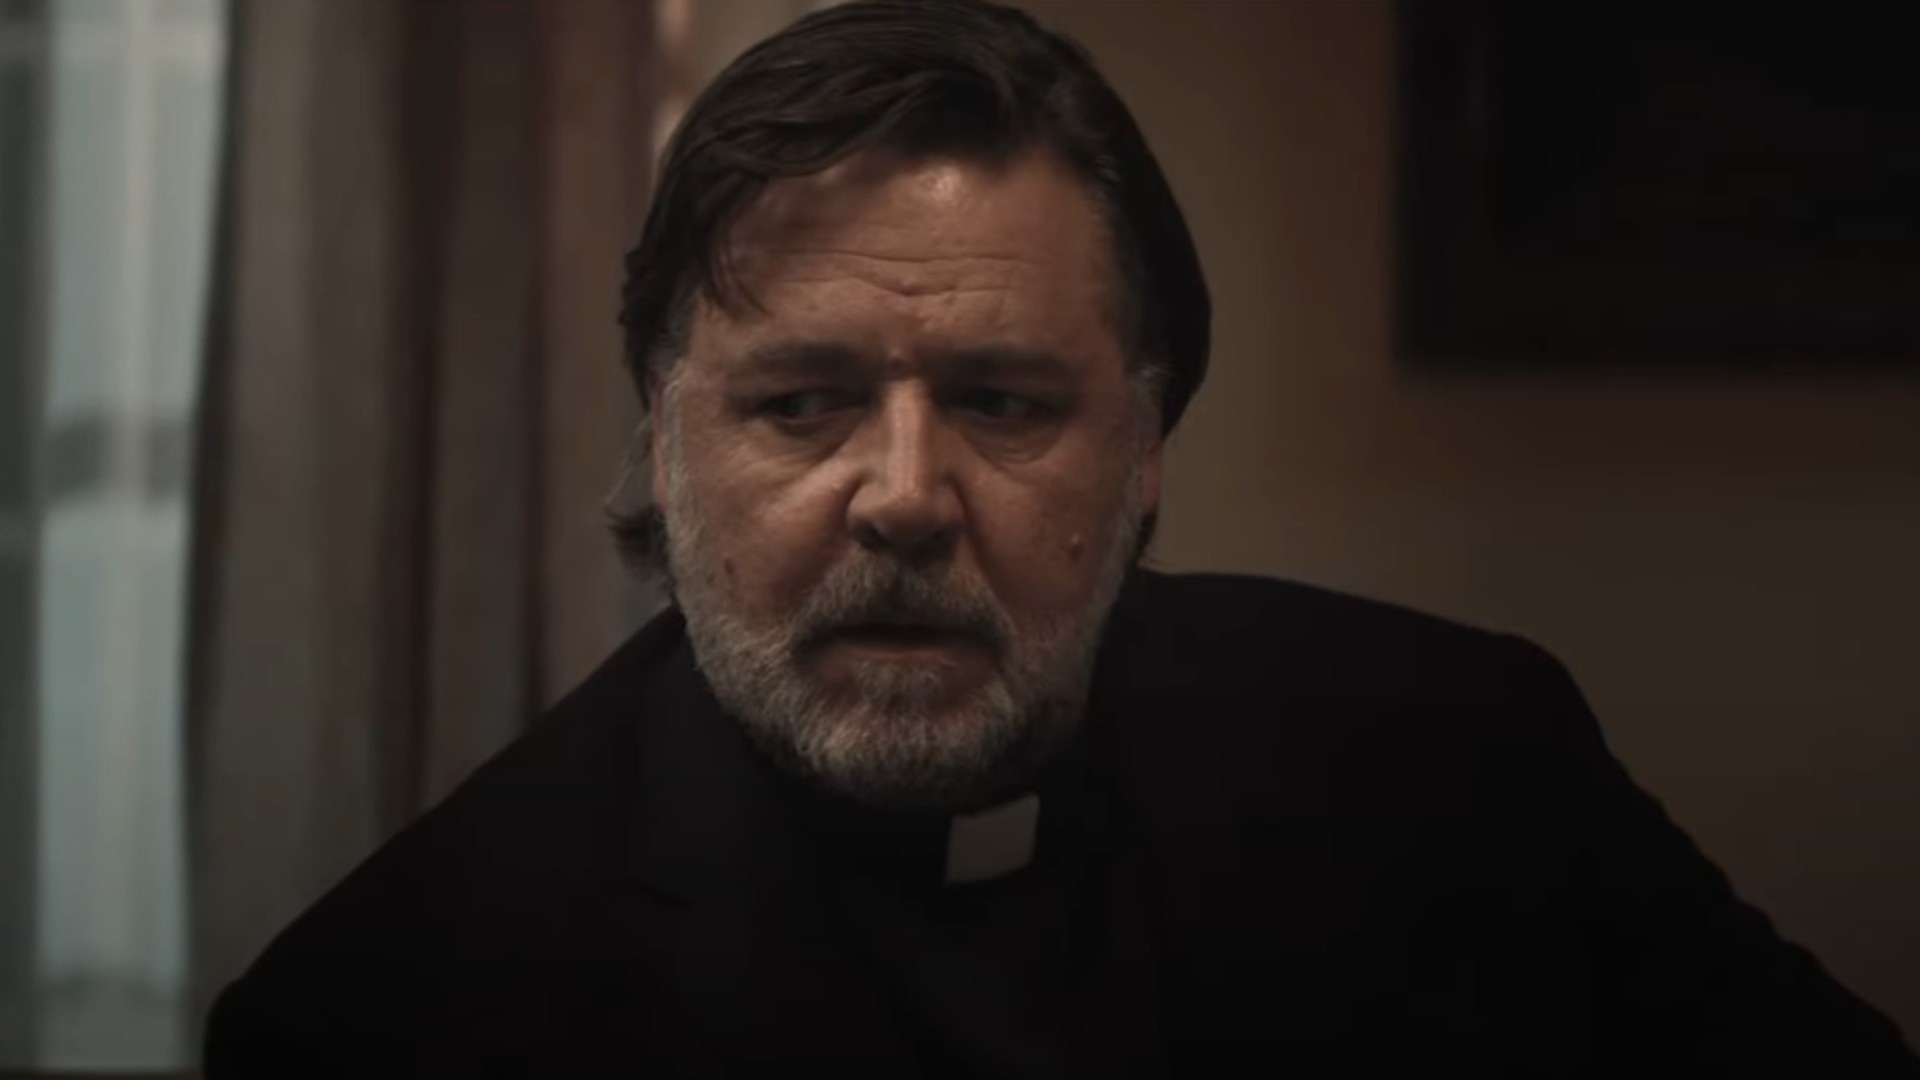 Рассел Кроу — притворный священник, которого преследуют вполне реальные демоны, в жутком первом трейлере нового фильма ужасов «Экзорцизм»